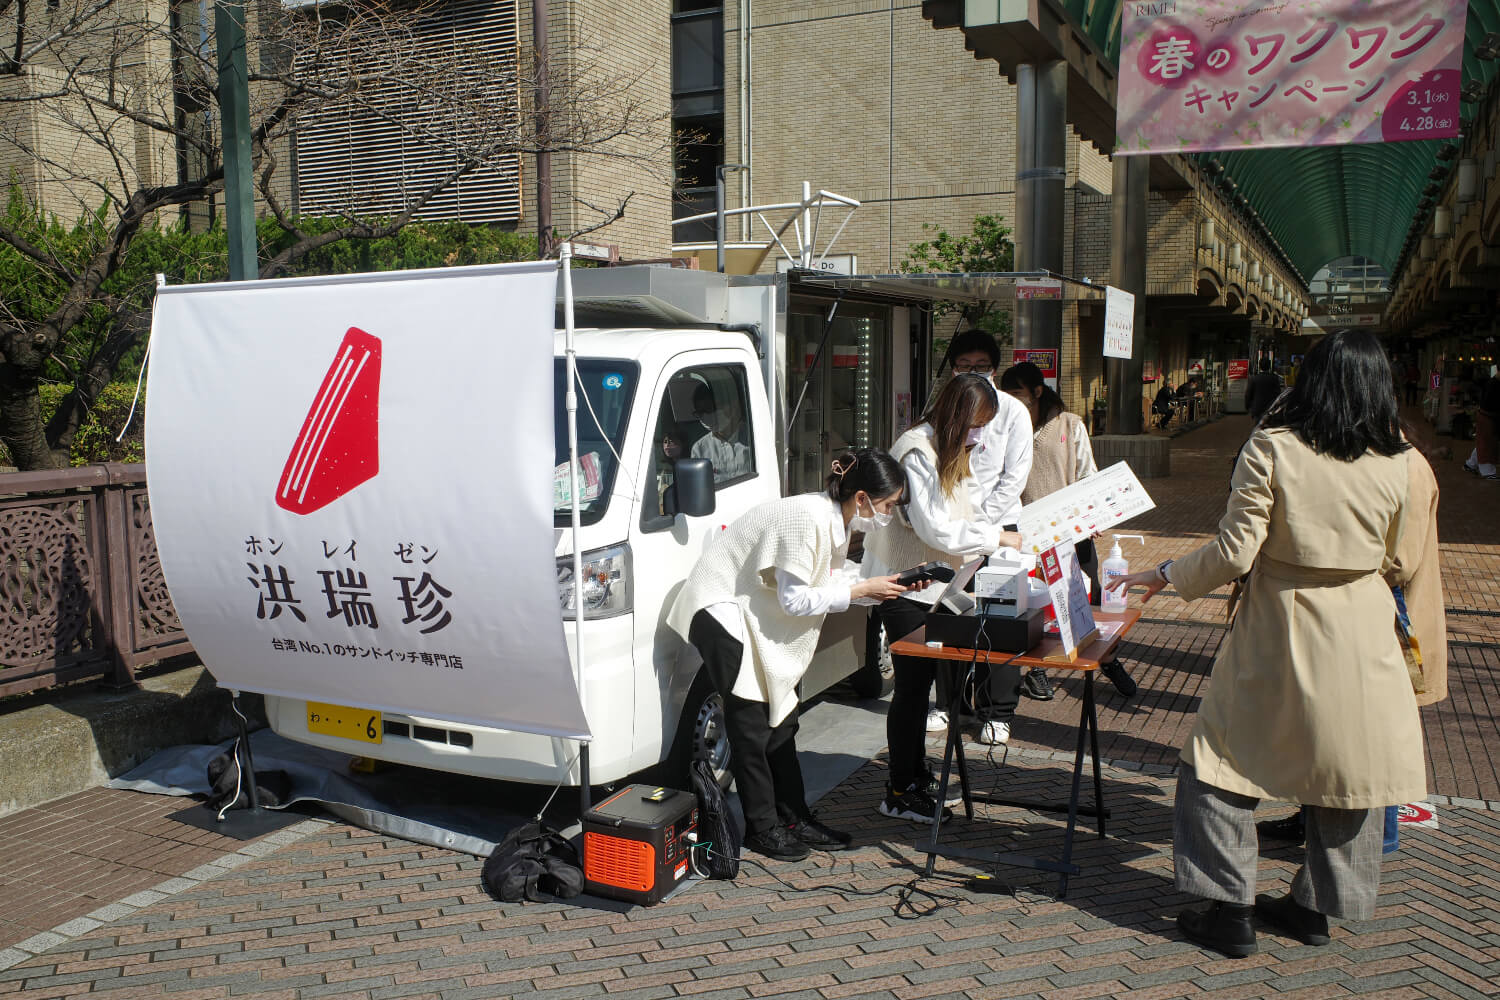 キッチンカーによる都内巡回販売も進行中。詳細はインスタグラム@hungruichen.japan参照。